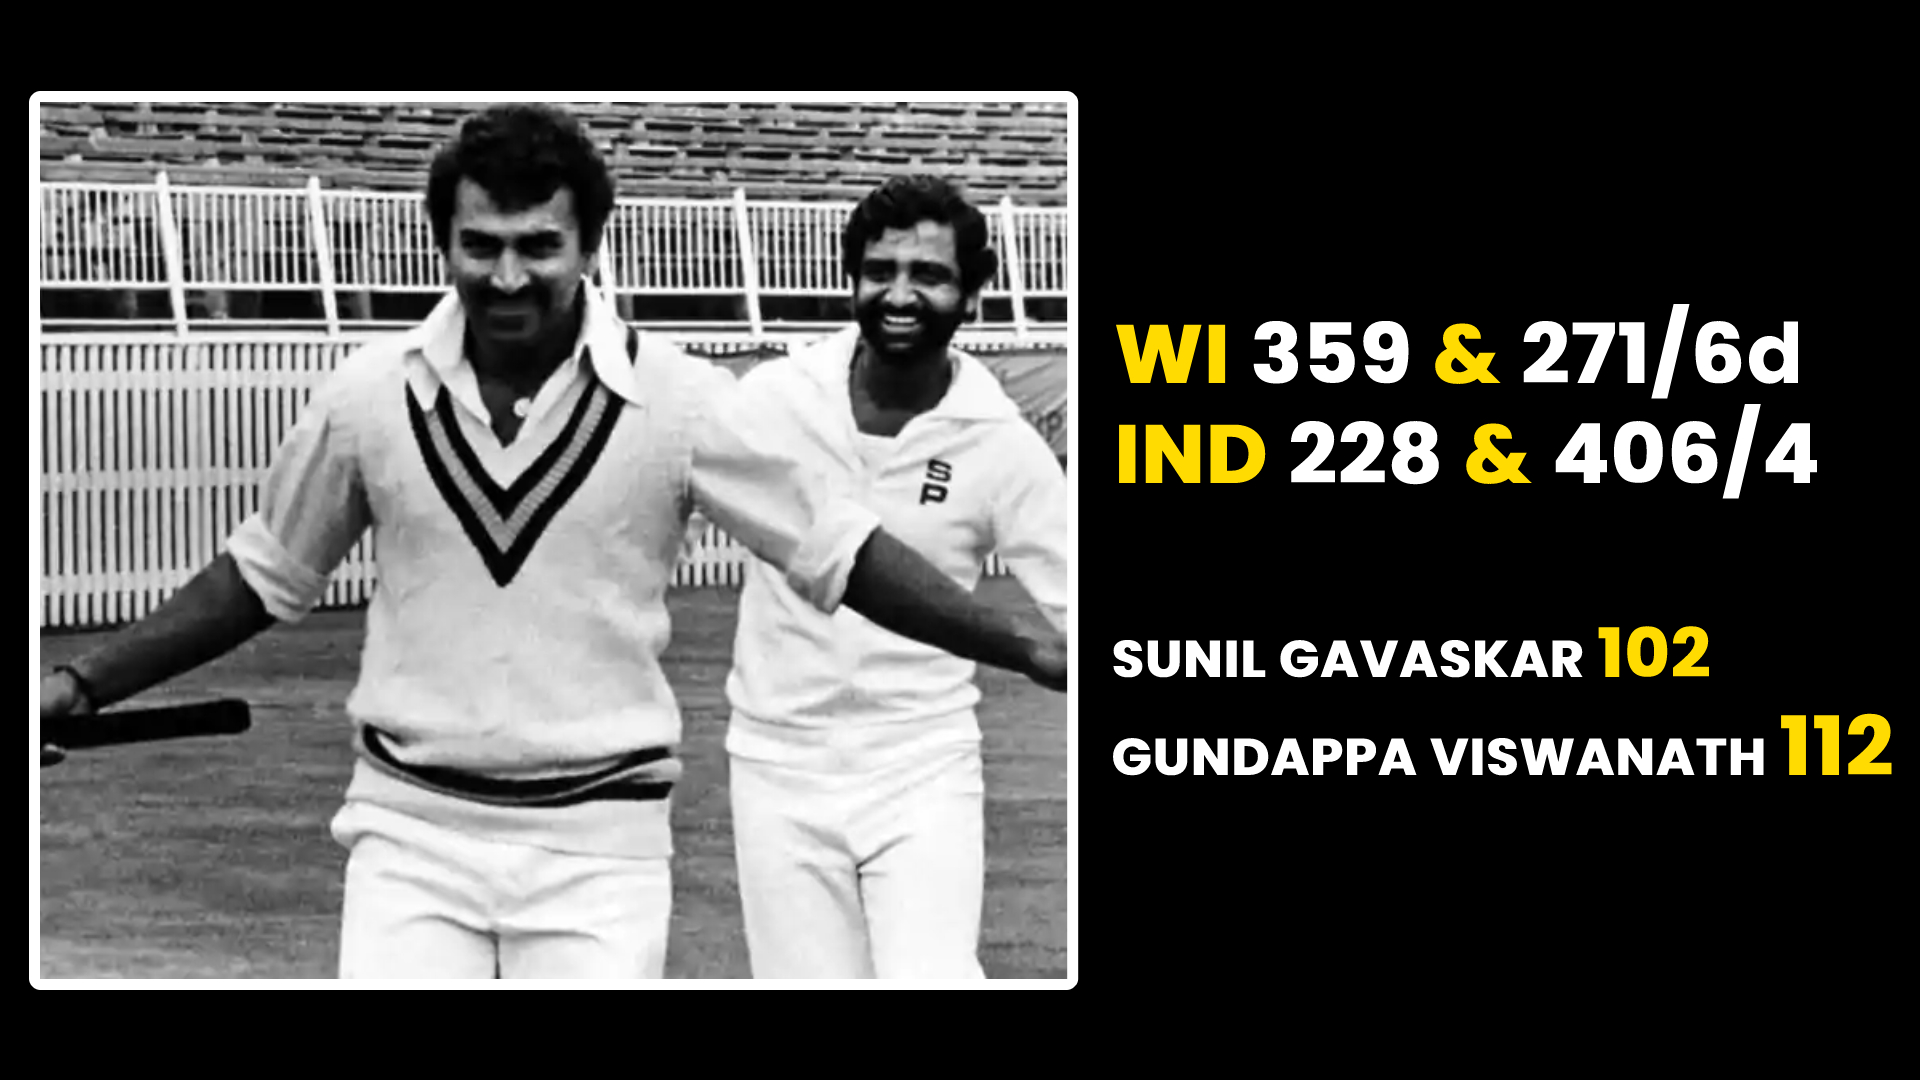 1975-76 में पोर्ट आफ स्पेन में खेले गए टेस्ट मैच में वेस्टइंडीज को भारत ने हराया